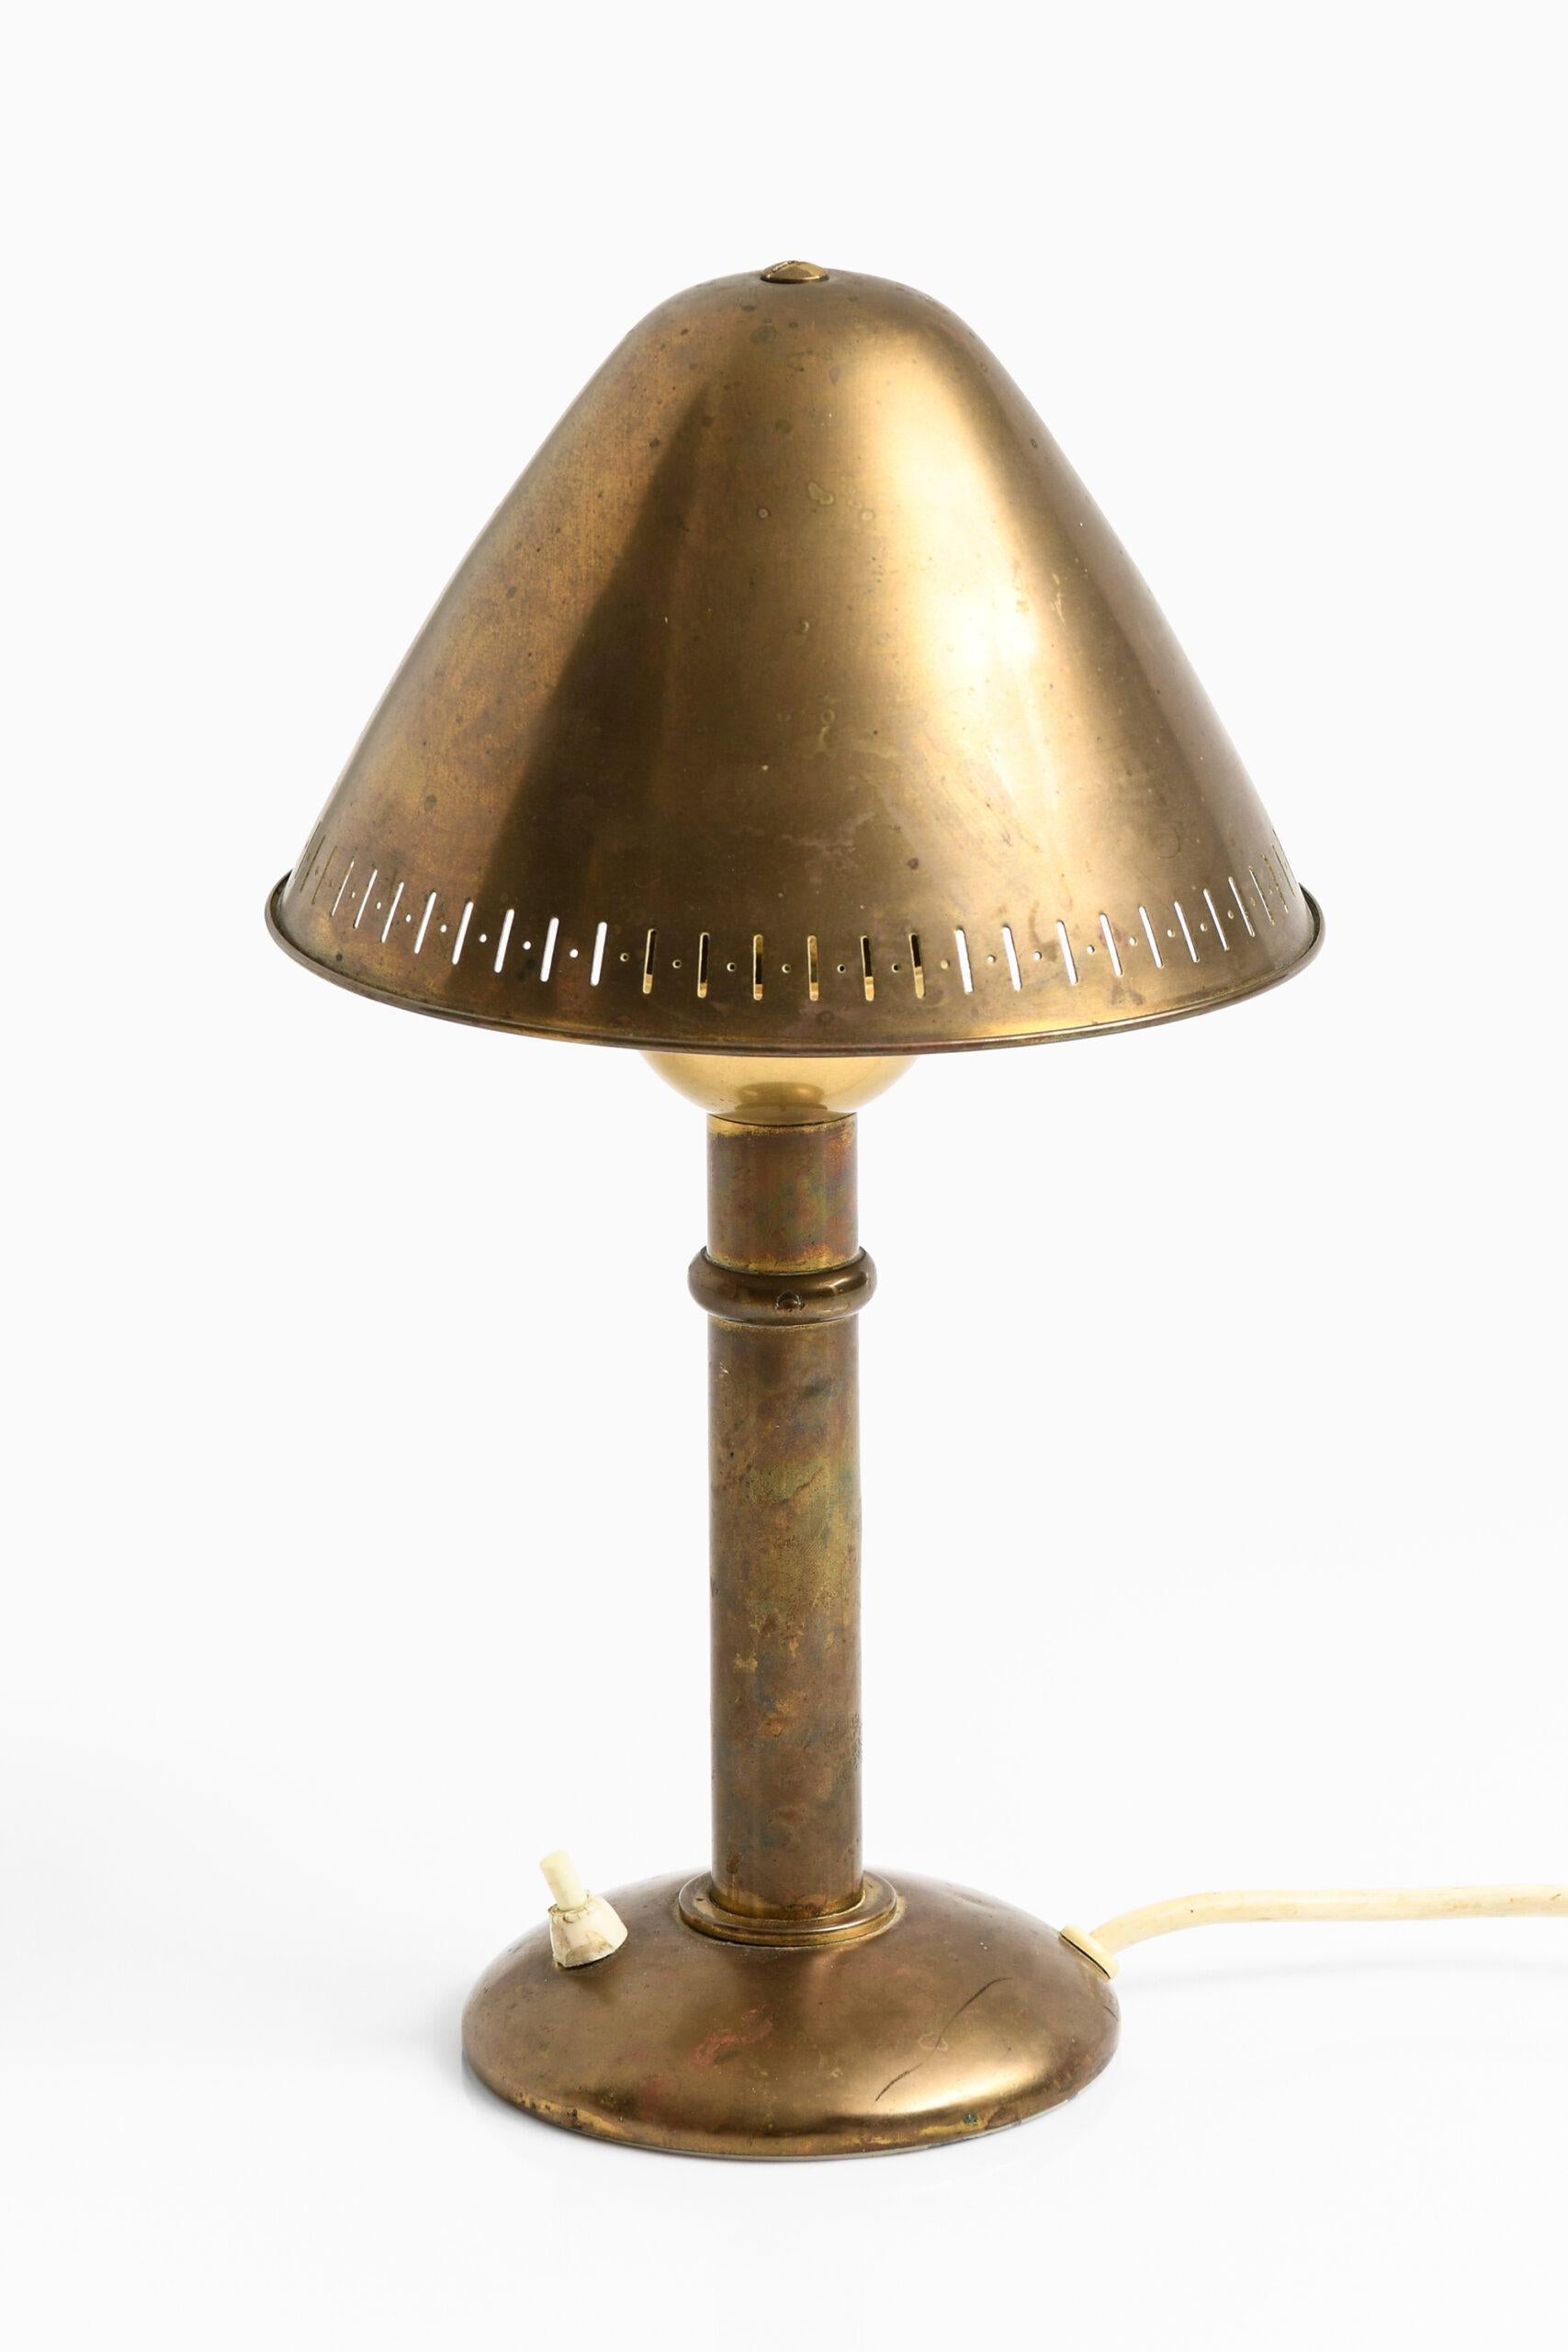 Seltene Tischlampe mit verstellbarem Schirm von unbekanntem Designer. Produziert von ASEA in Schweden.